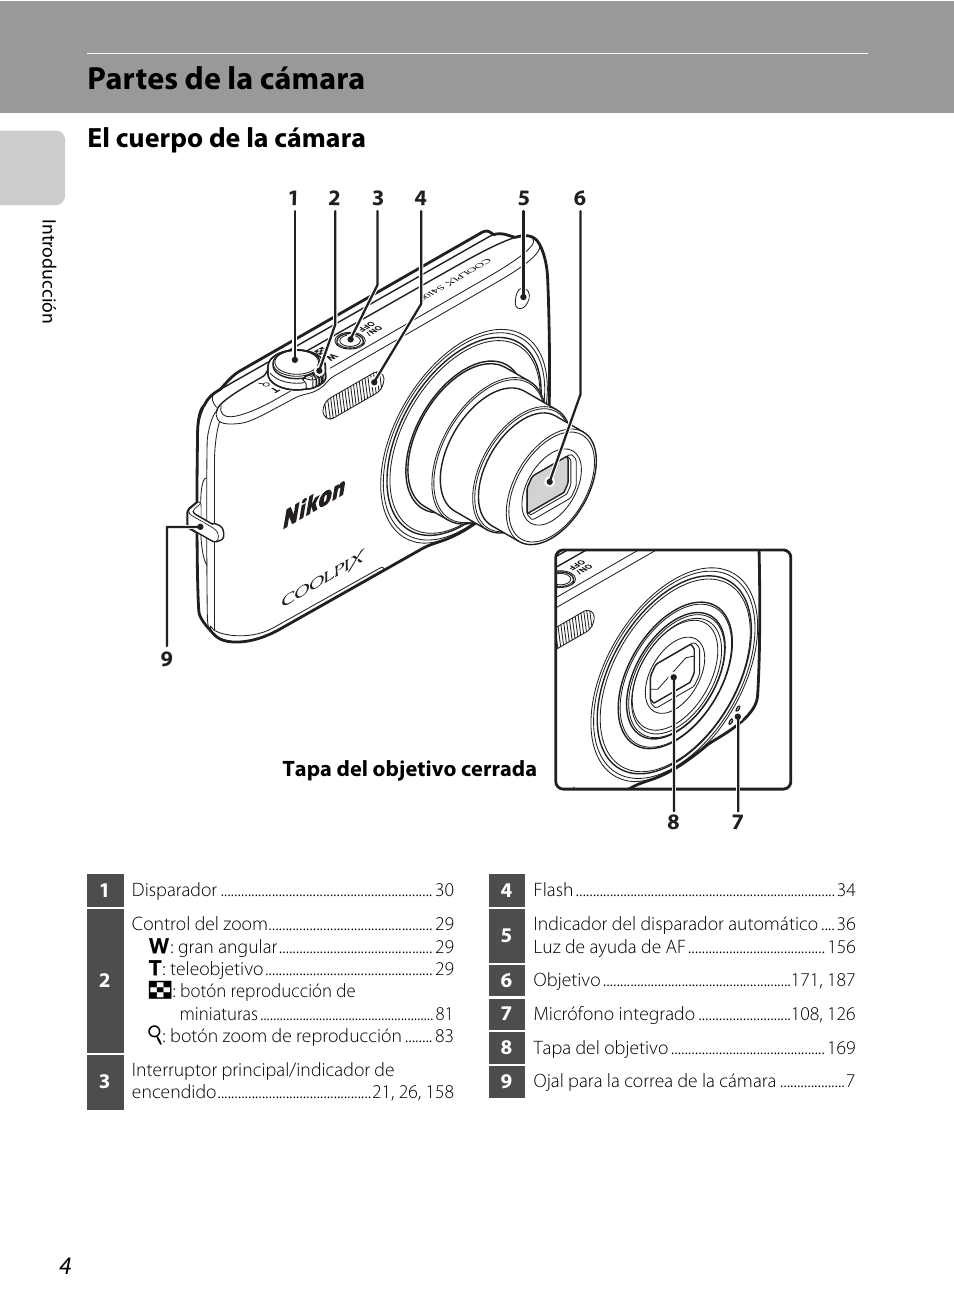 Partes de la cámara, El cuerpo de la cámara | Nikon Coolpix S4100 Manual del usuario | Página 16 / 208